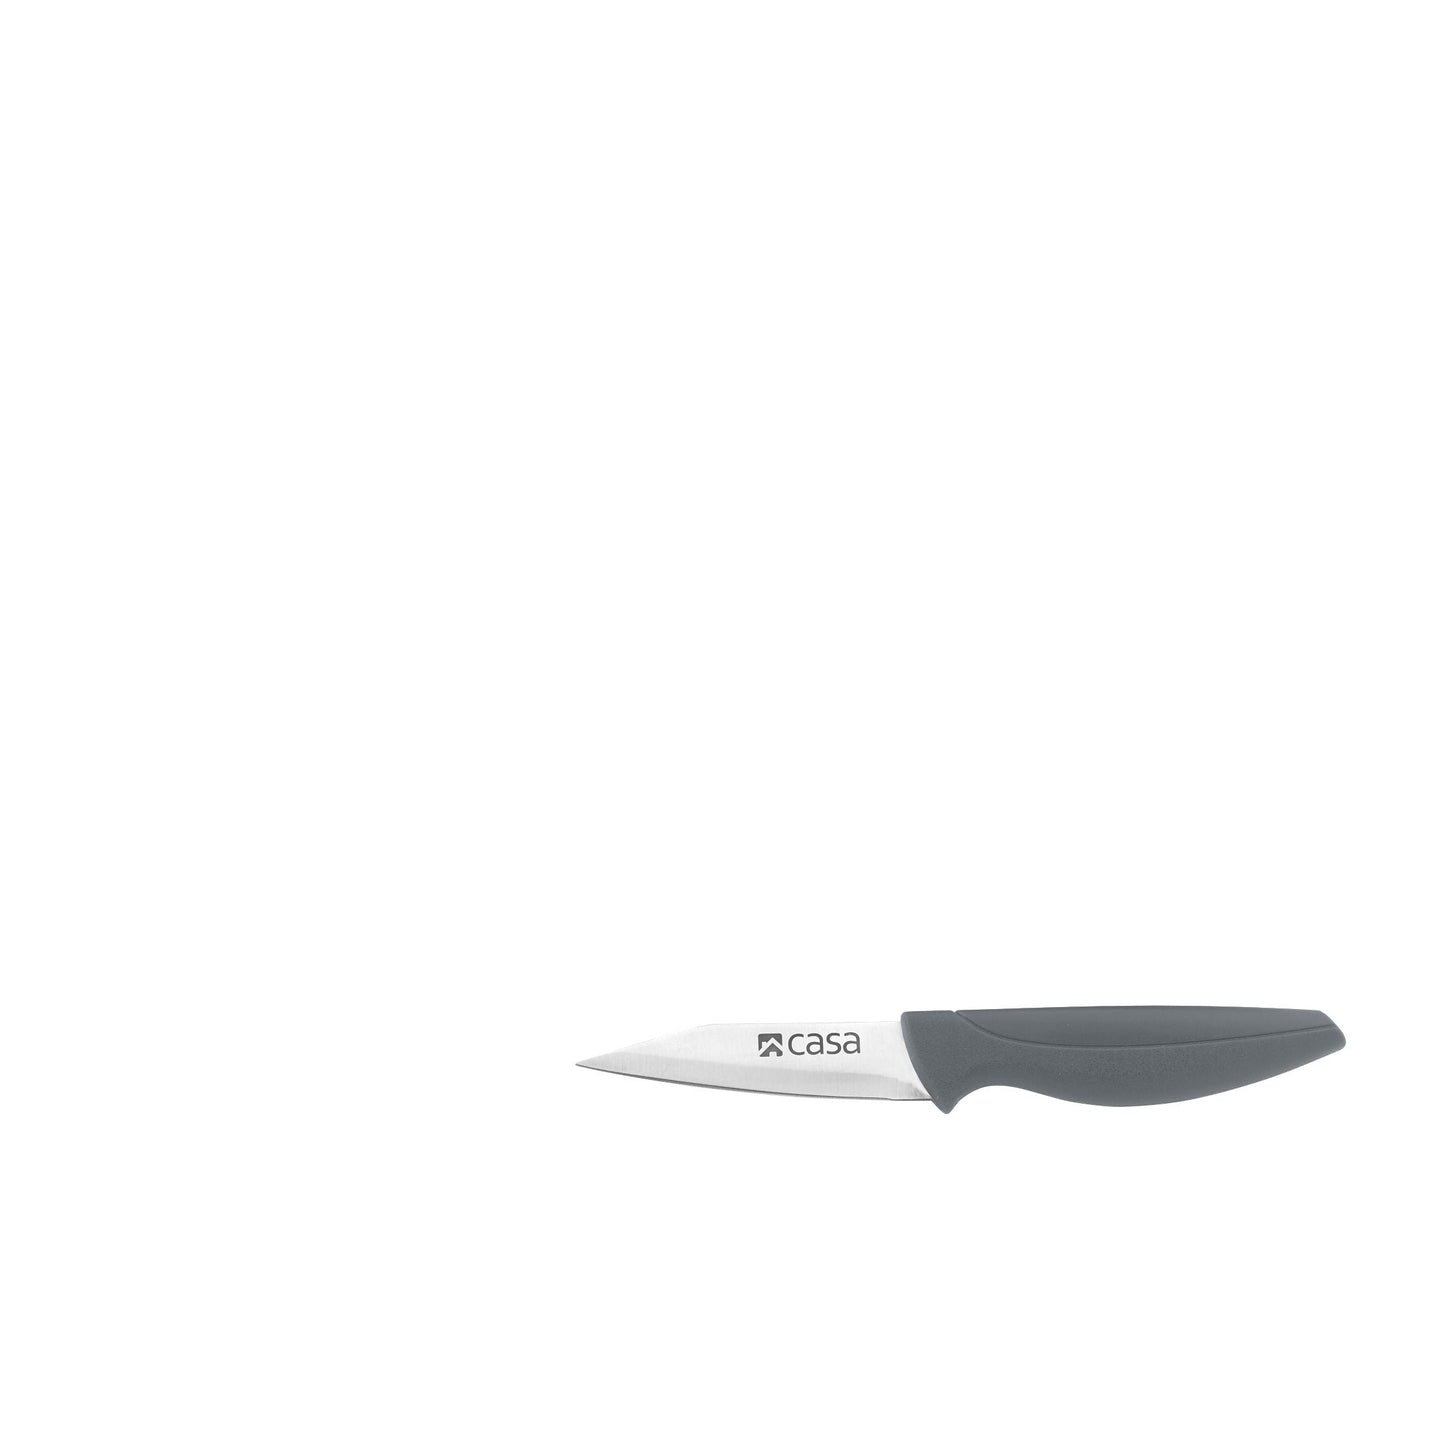 5PC KNIFE & BLOCK - GREY MARBLE - FIRENZE